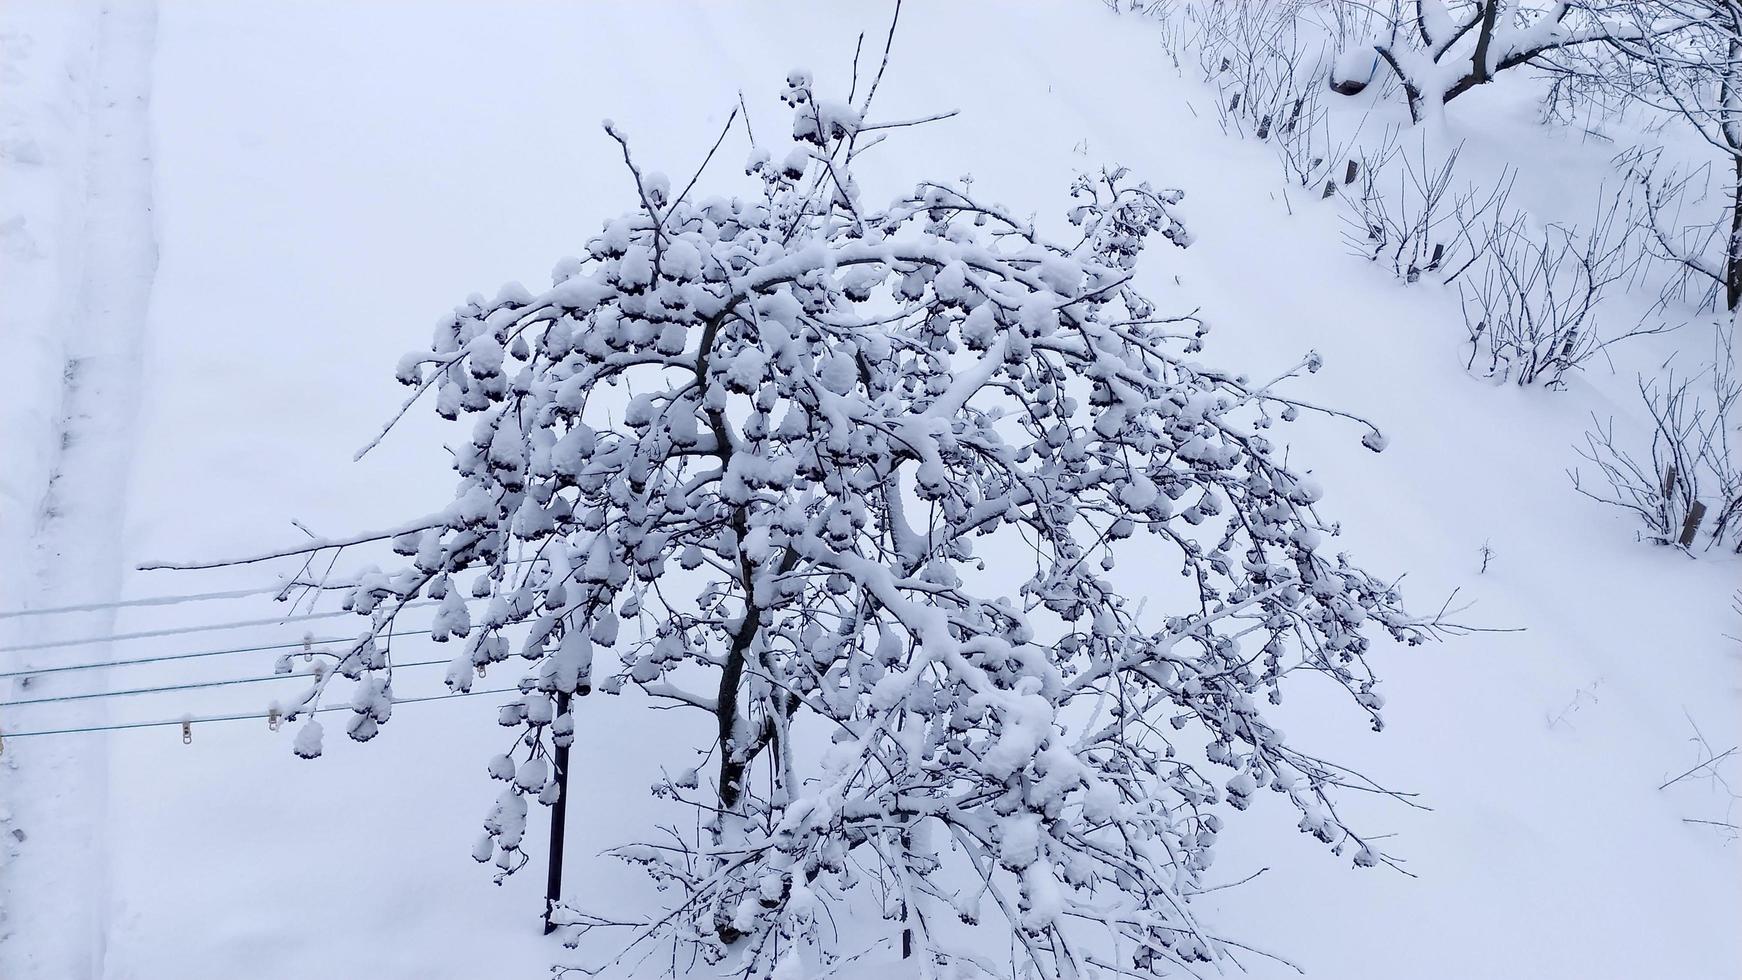 Rowan dans la neige. campagne en hiver. paysage d'hiver enneigé pittoresque. photo